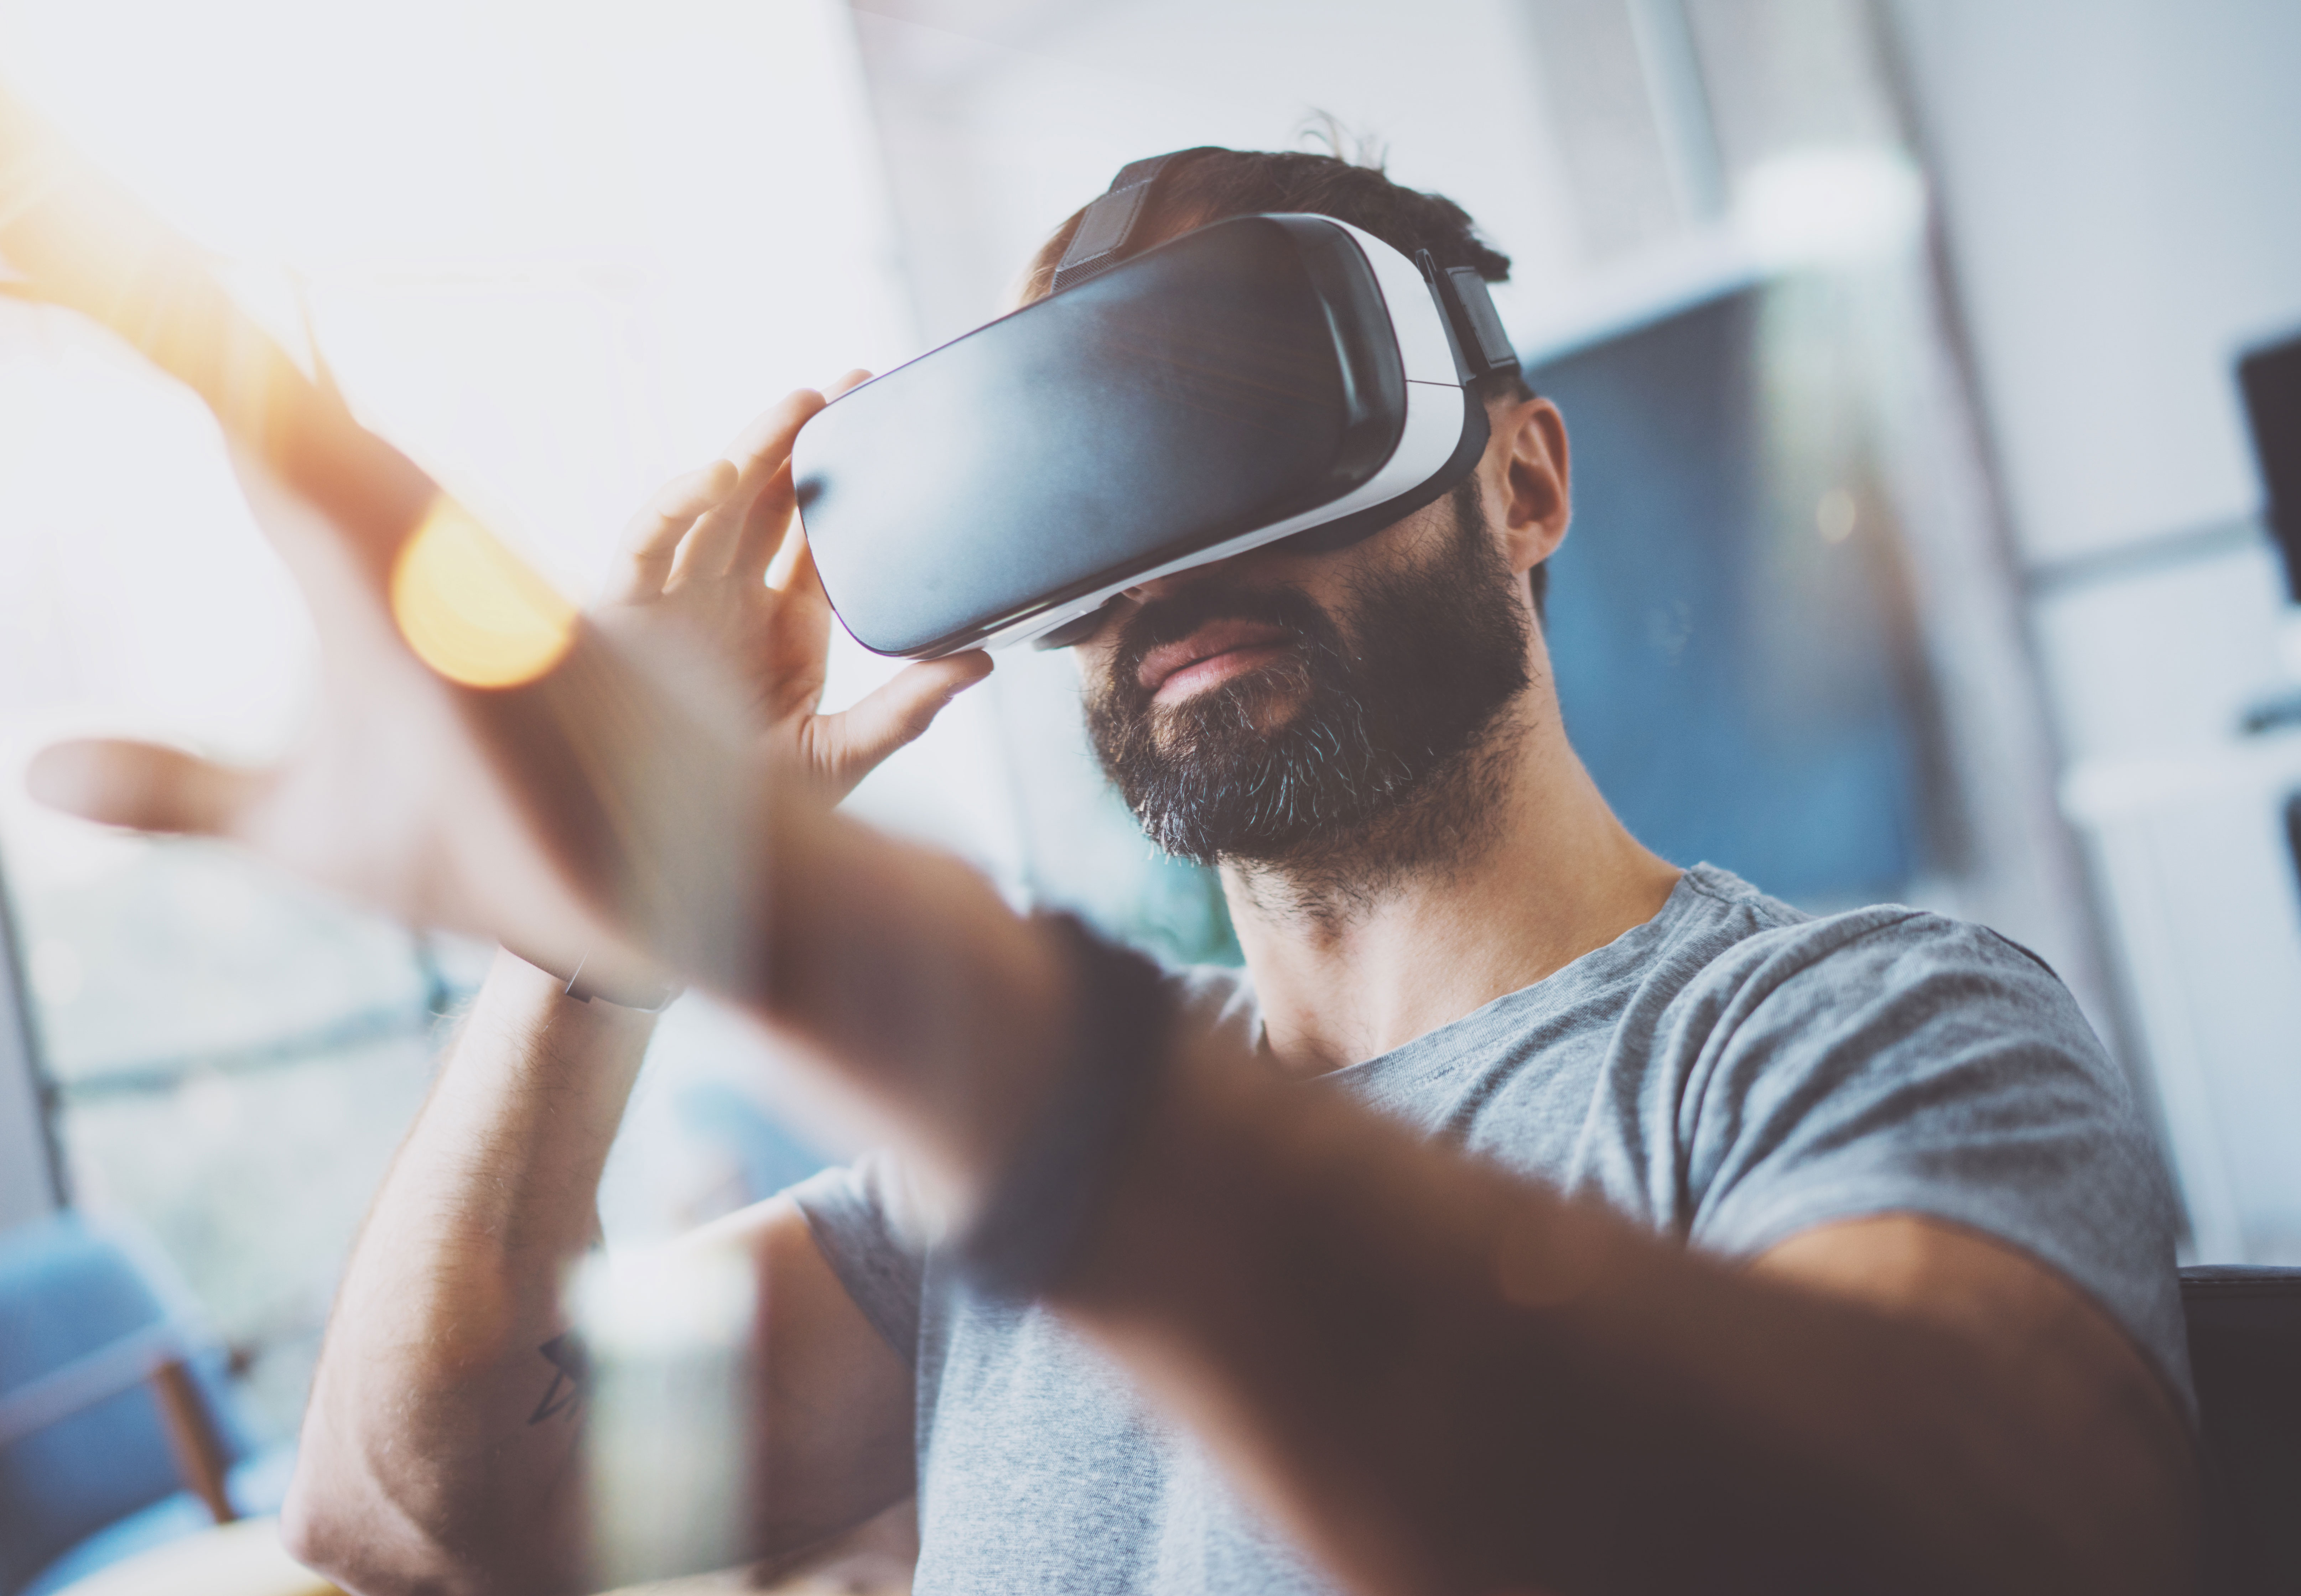 Друзей виар. Виртуальная реальность виар. VR очки на человеке. Человек в виртуальной реальности. ВР очки на человеке.